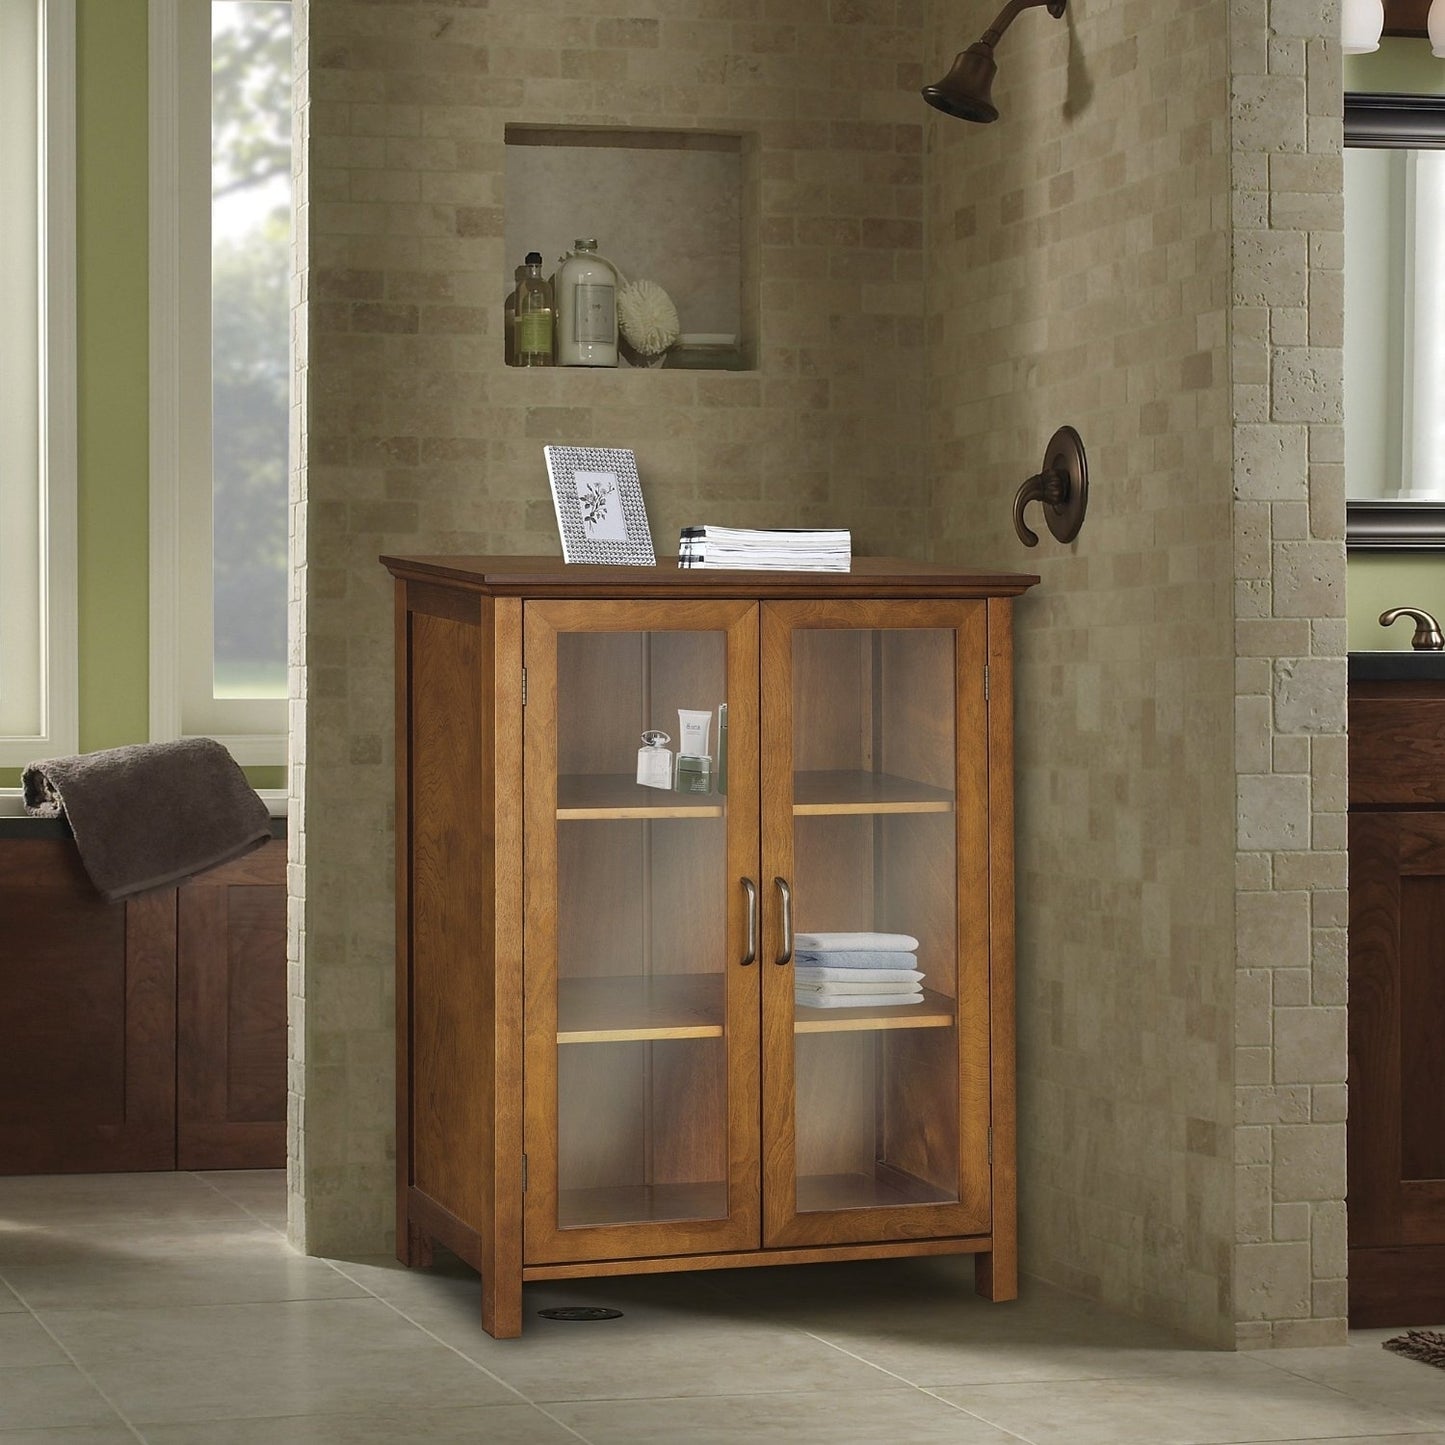 Oak Finish Bathroom Floor Cabinet with 2 Glass Doors & Storage Shelves